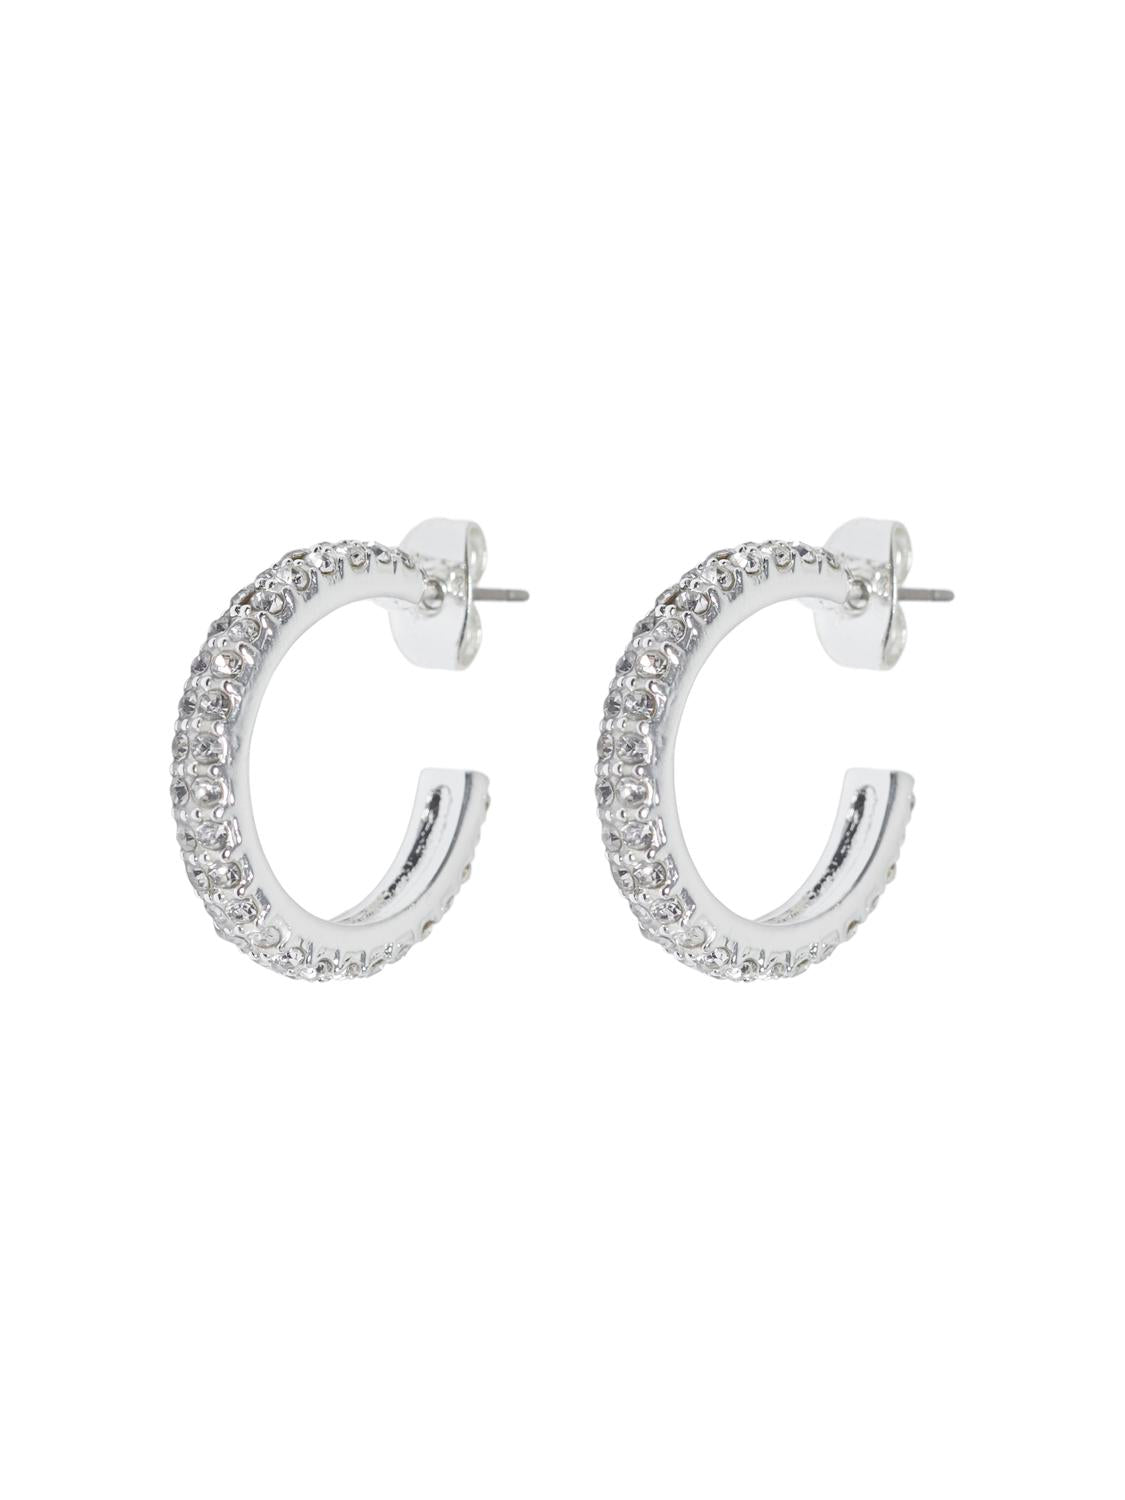 STUGINNY Earrings - Silver